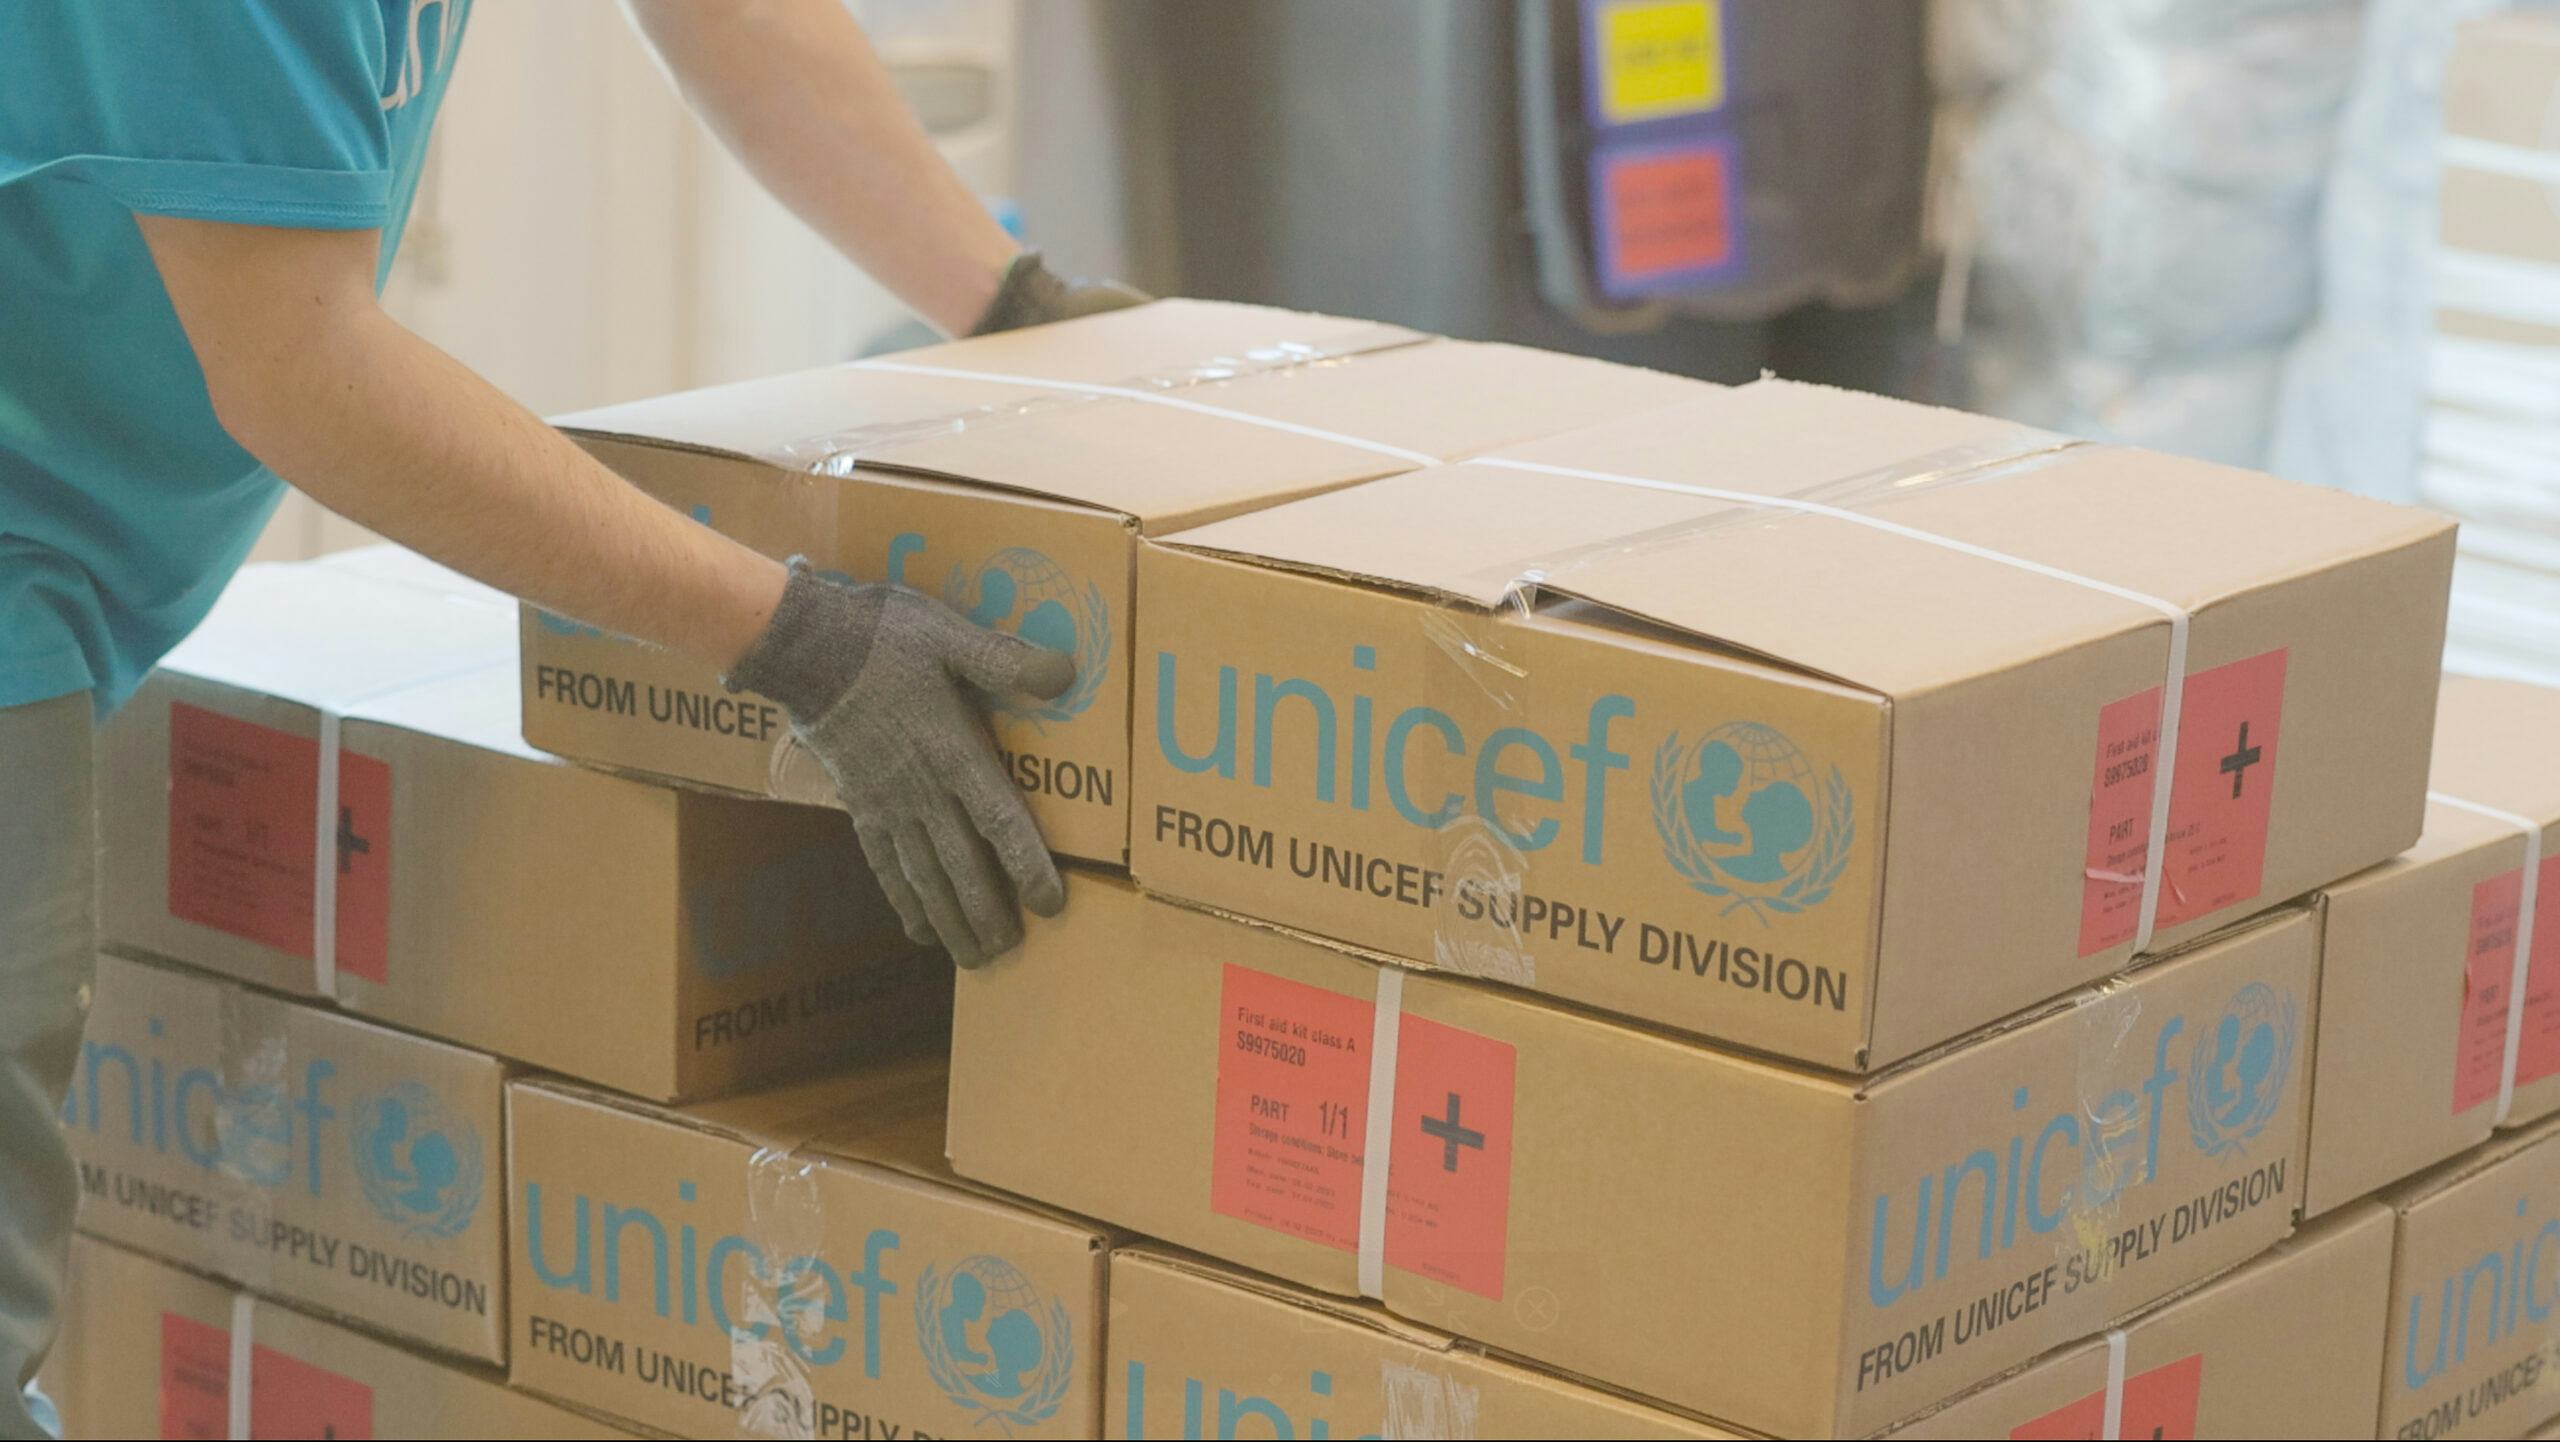 Flexport helpt Unicef met duurzame logistiek in noodsituaties